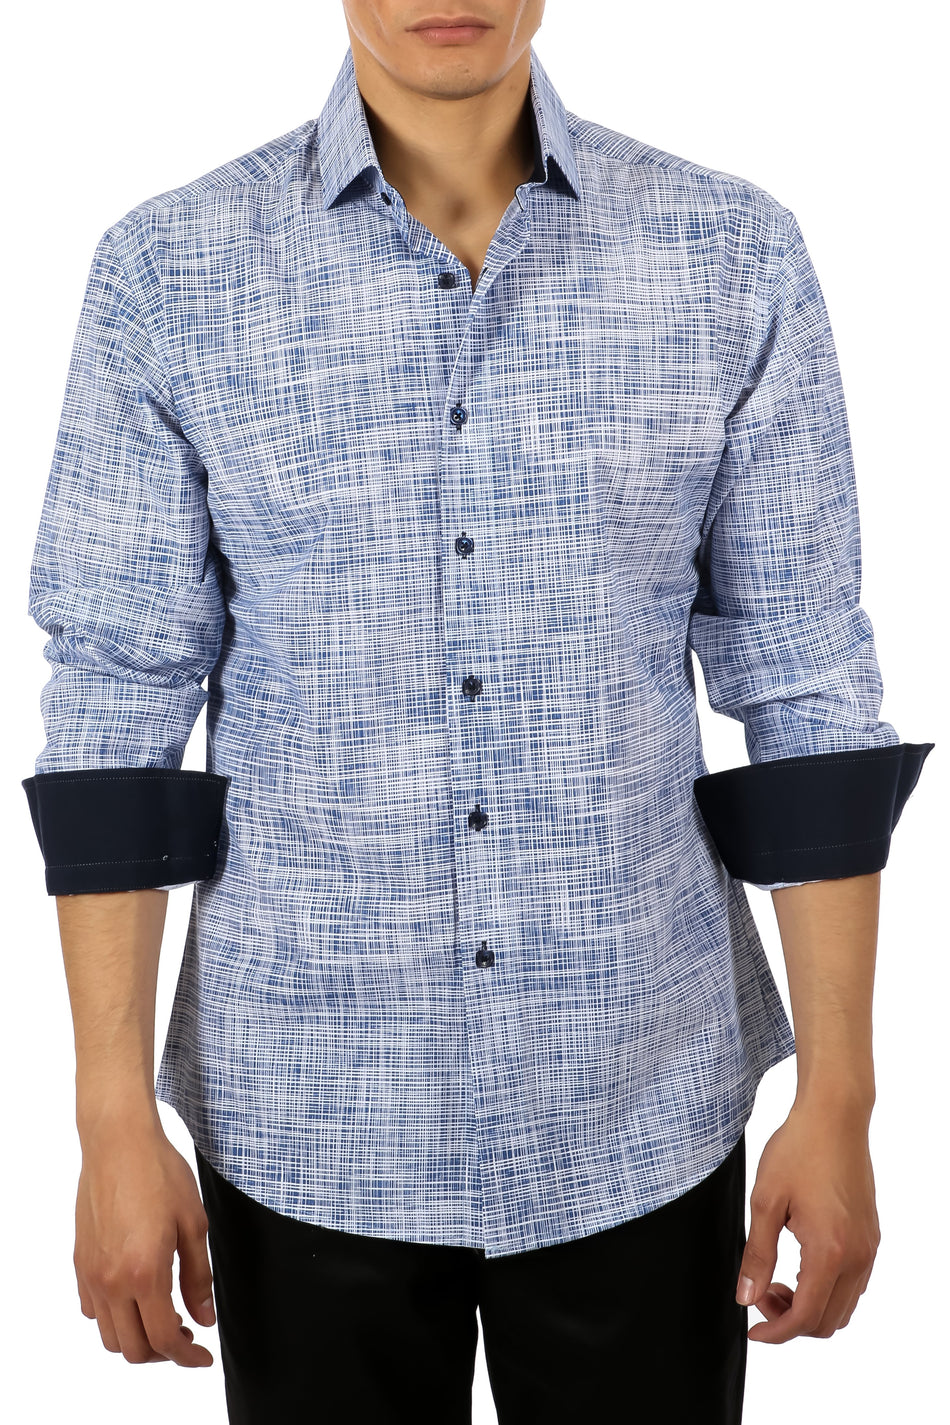 Men's Blue Button Up Long Sleeve Dress Shirt